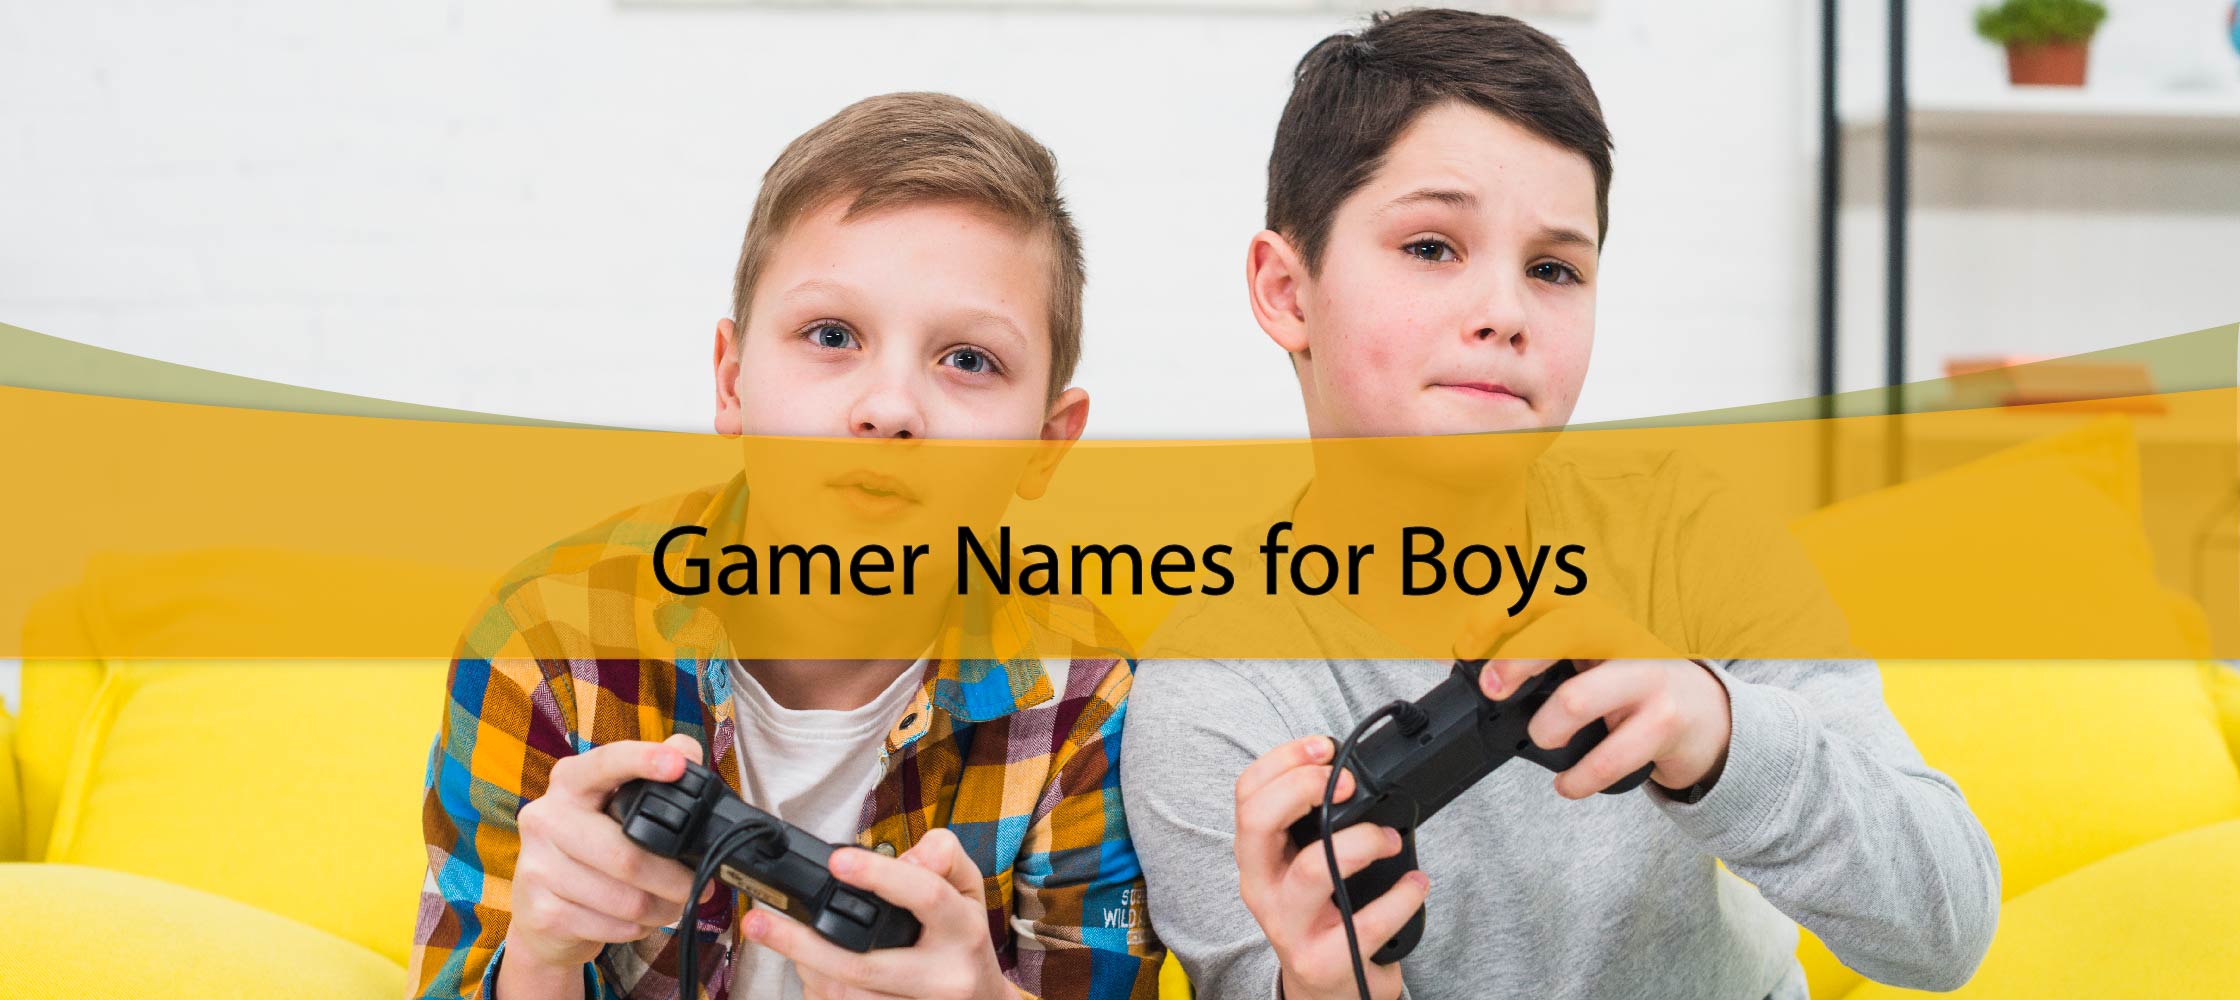 Gamer Names for Boys